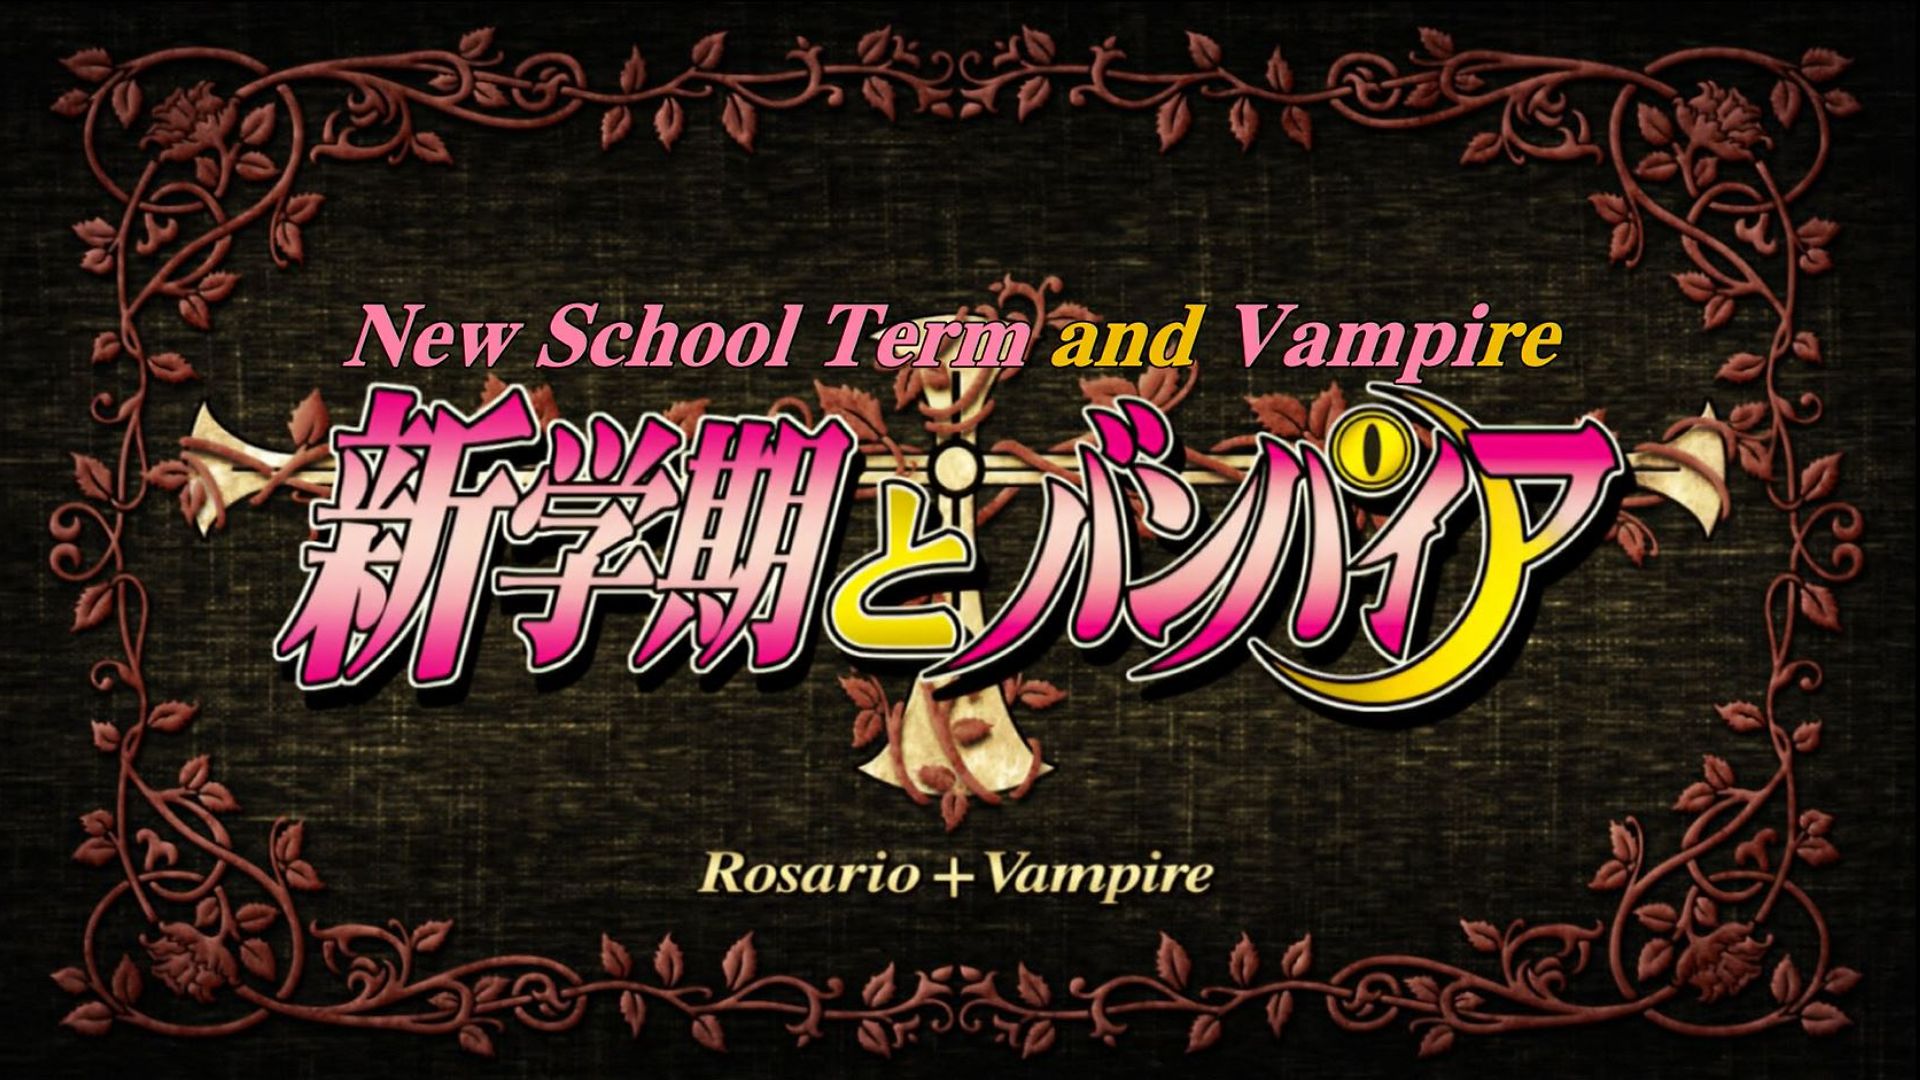 Rosario + Vampire background